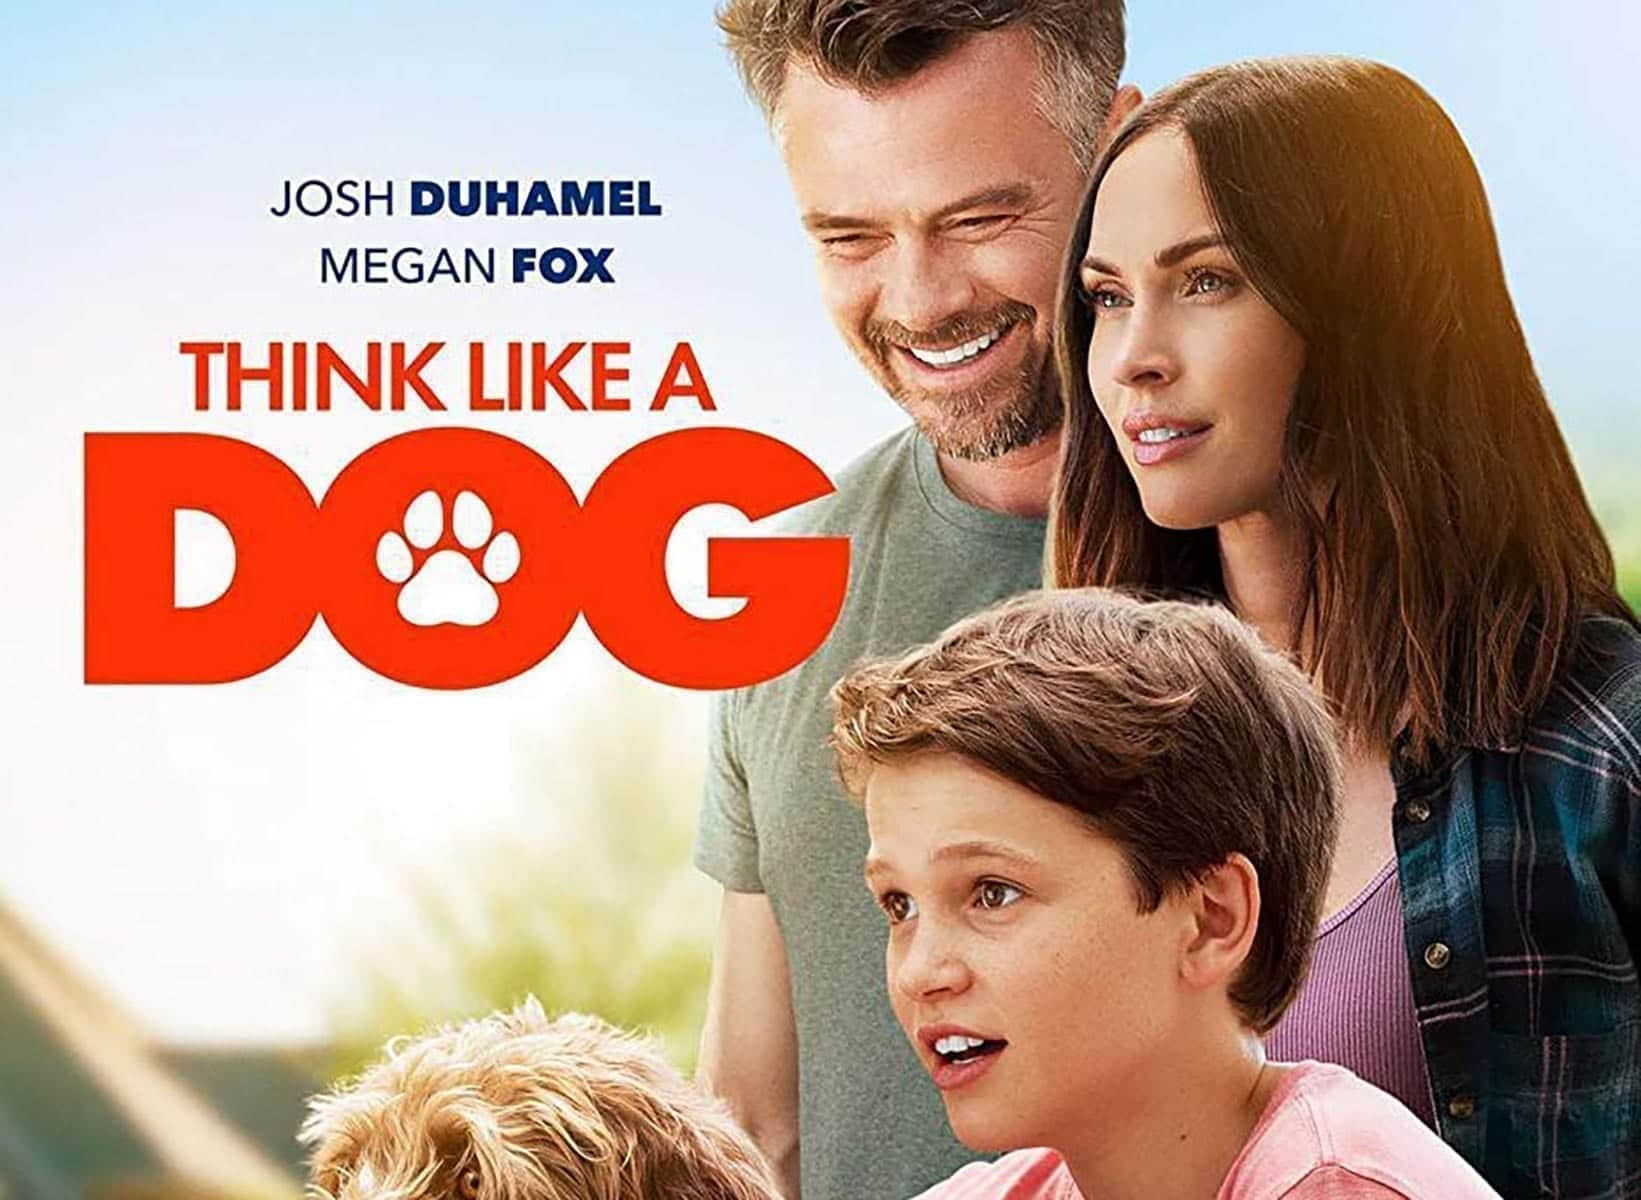 Think Like a Dog (2020)